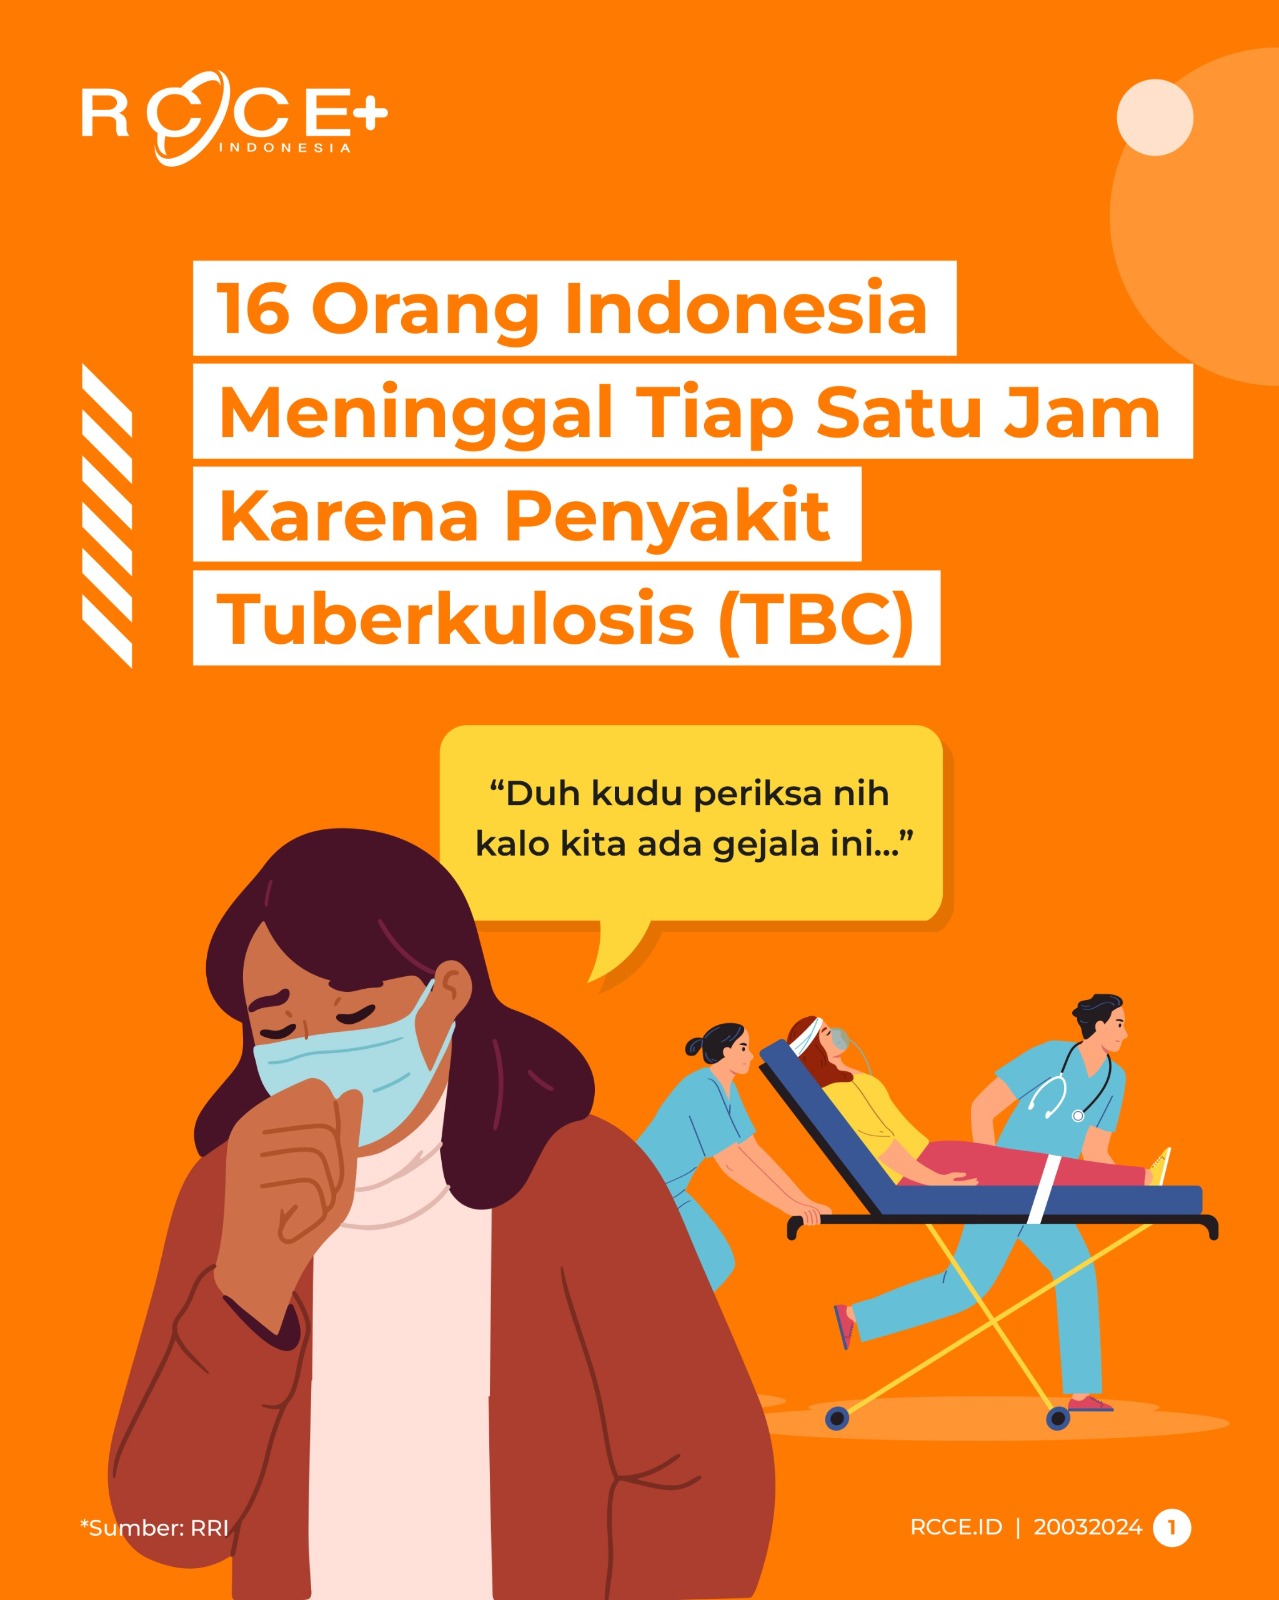 16 Orang Indonesia Meninggal Tiap Satu Jam Karena TBC